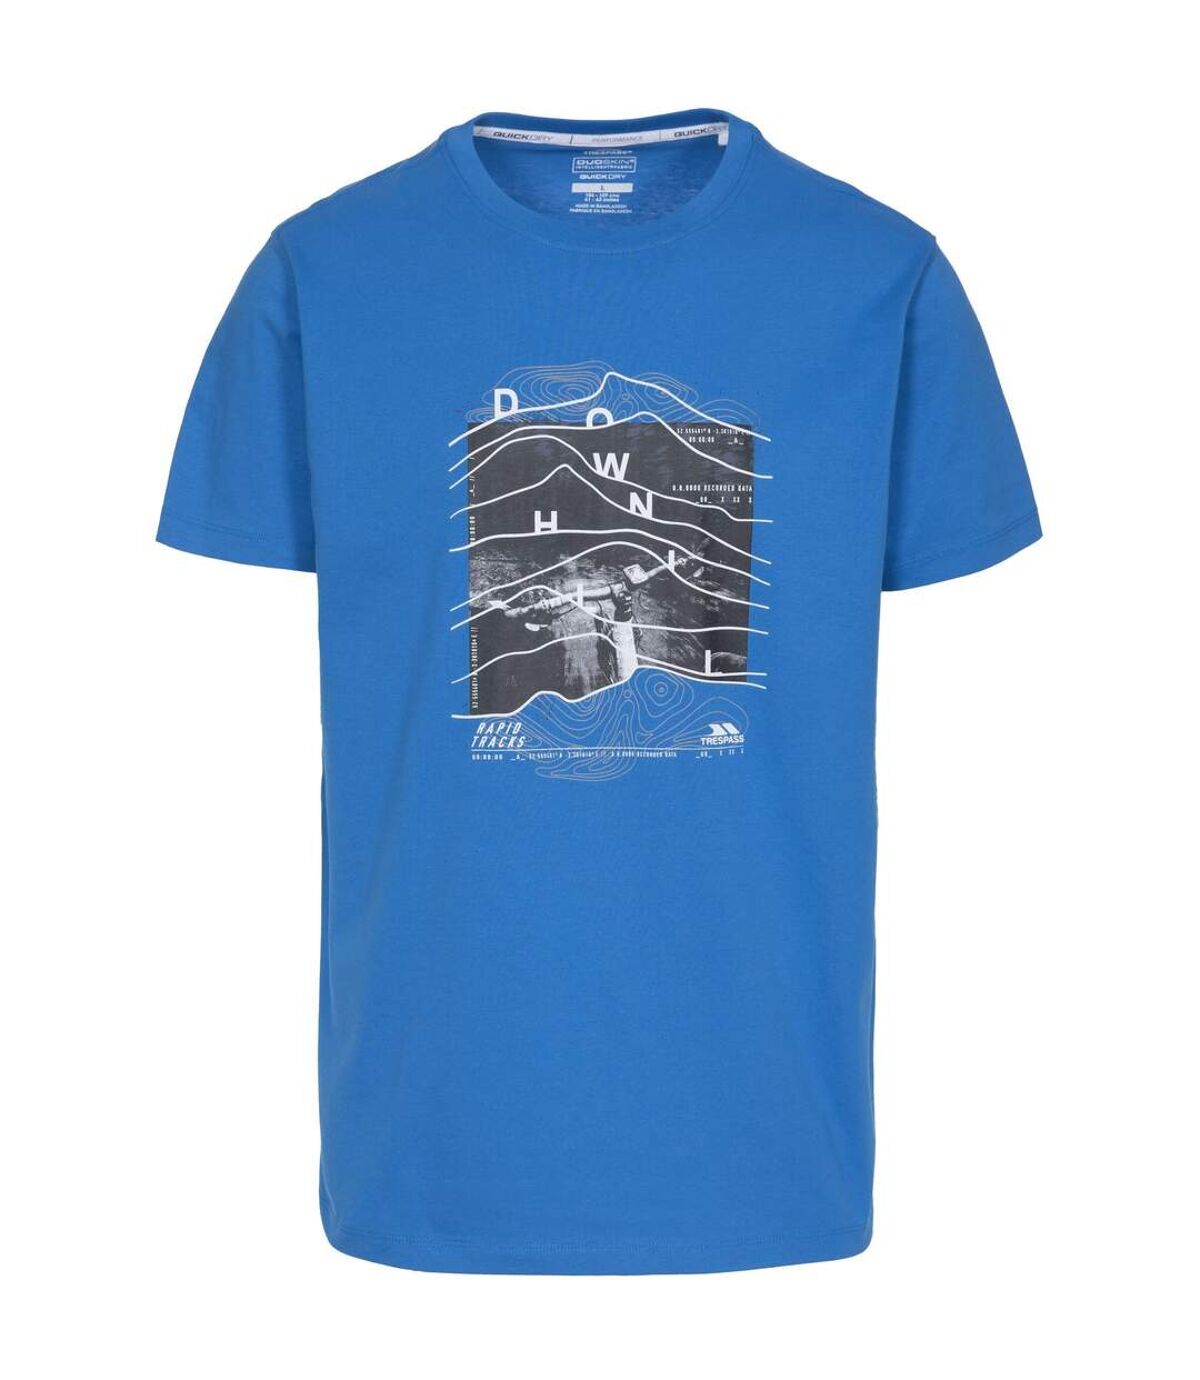 Trespass Mens Downhill T-Shirt (Blue) - UTTP4304